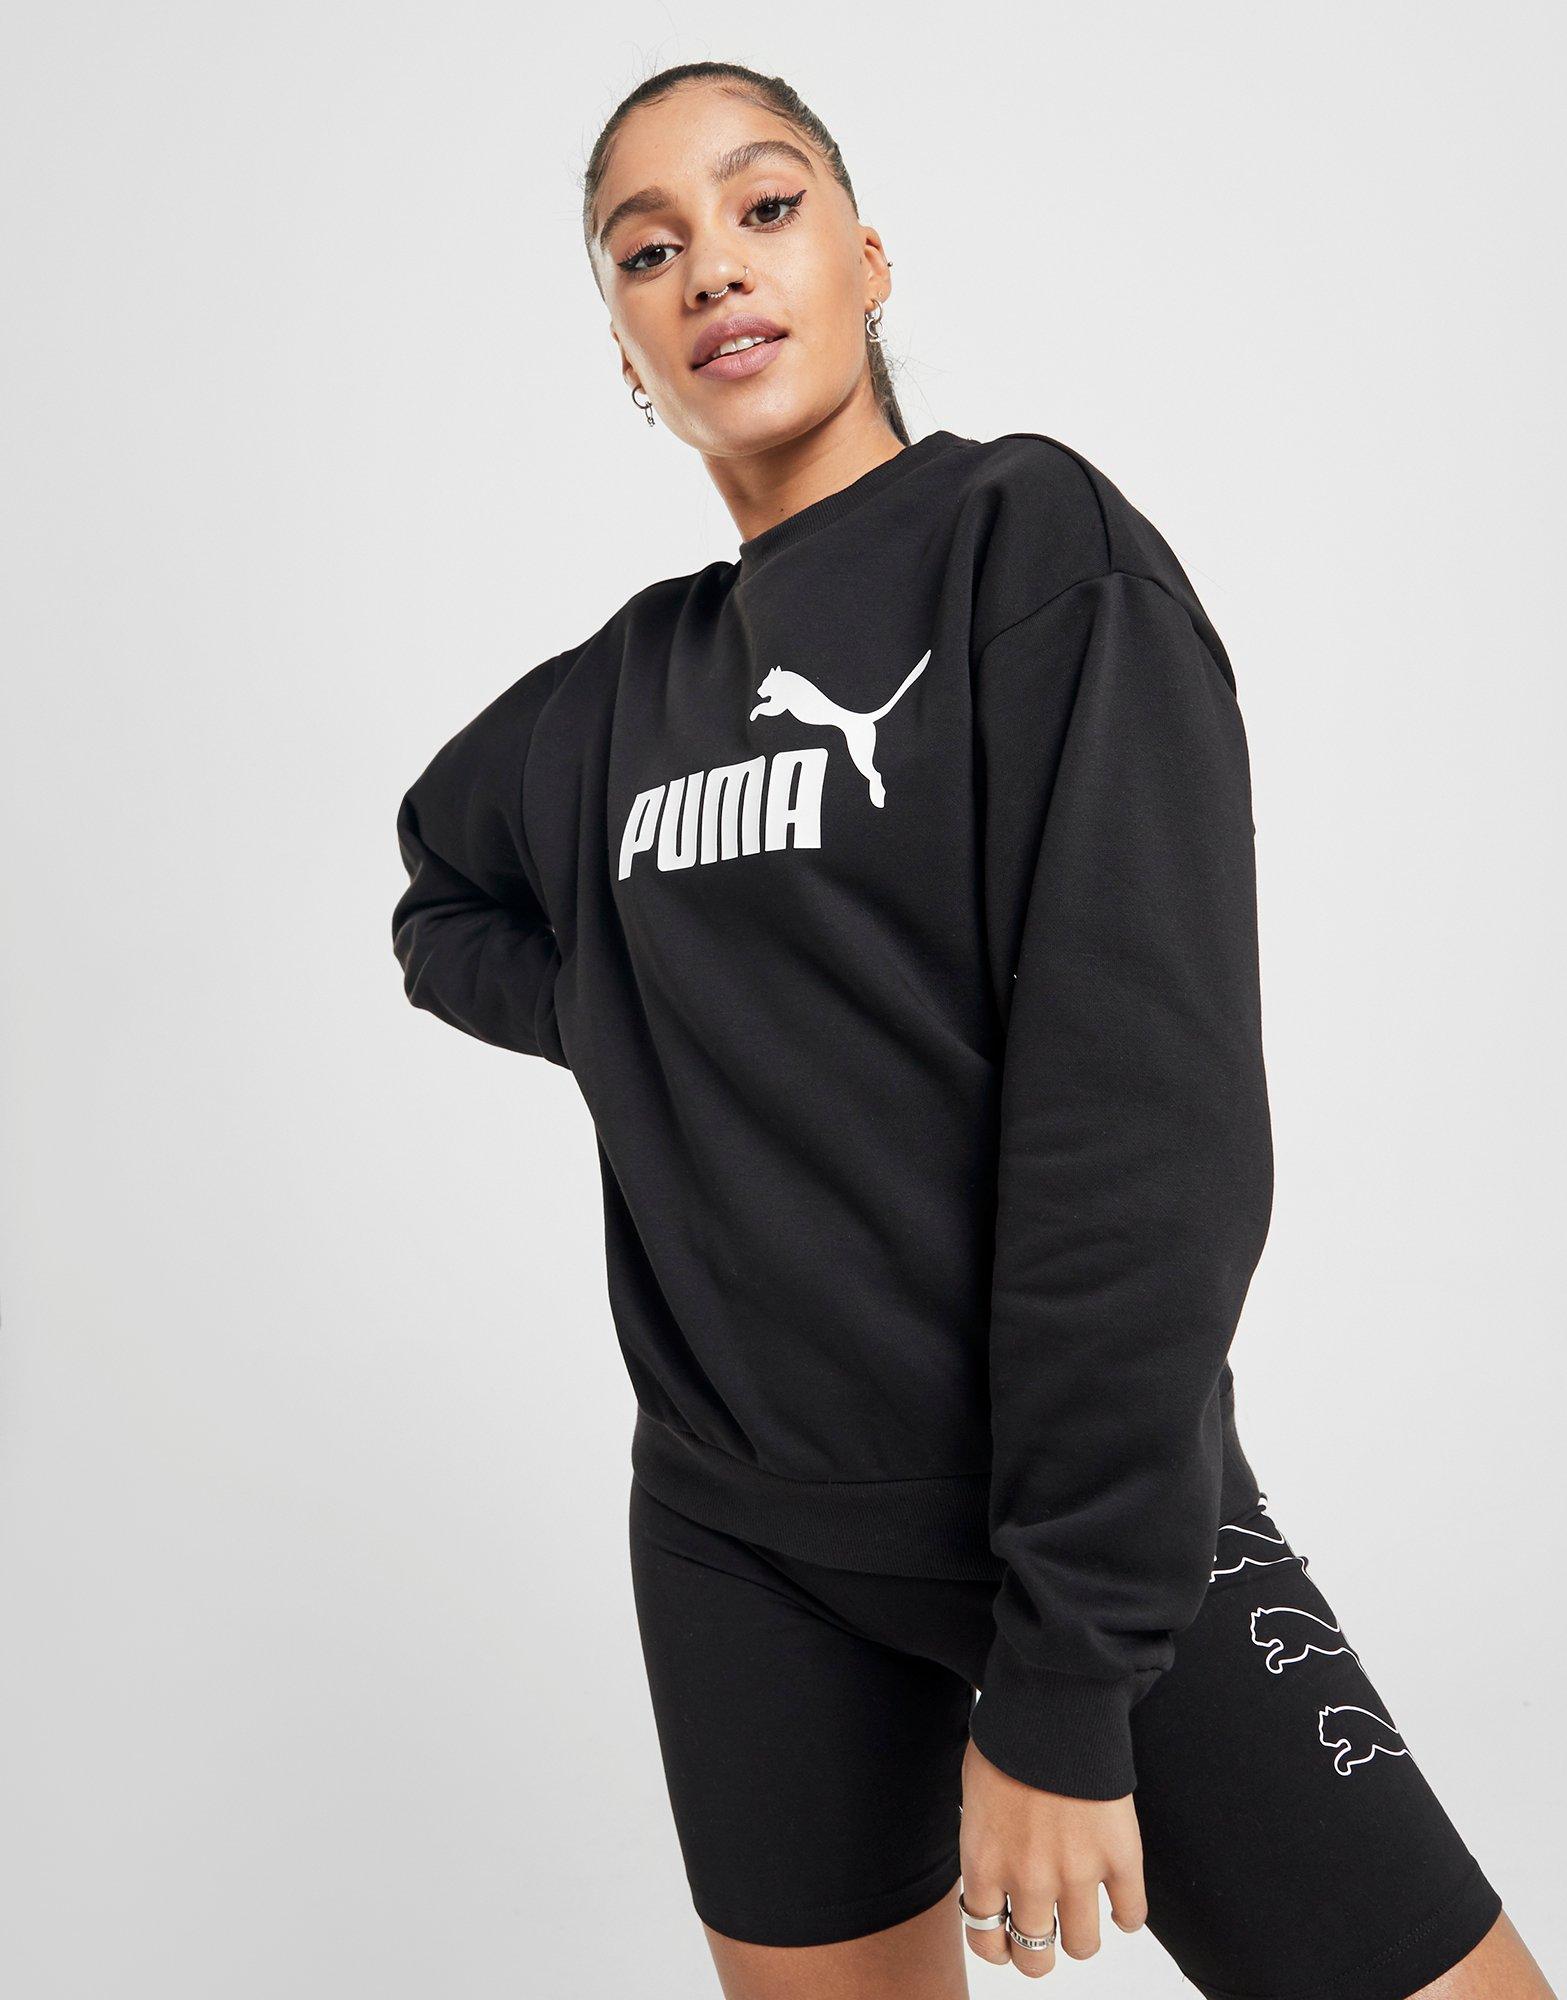 New Puma Women’s Core Crew Sweatshirt | eBay